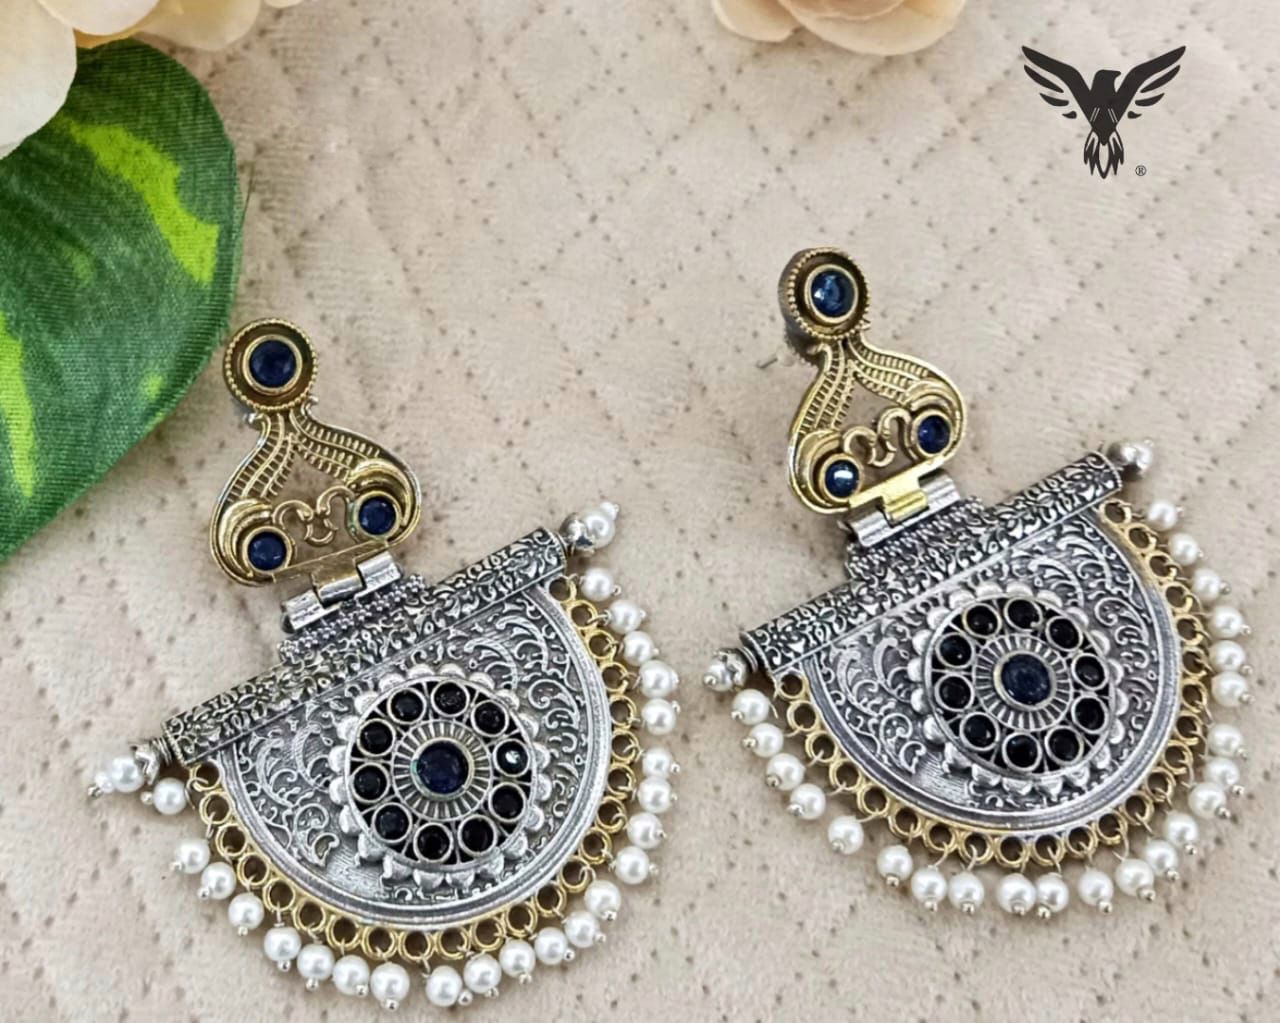 Paahi Silver Look Alike Kundan Earings In Black With Pearl Drops